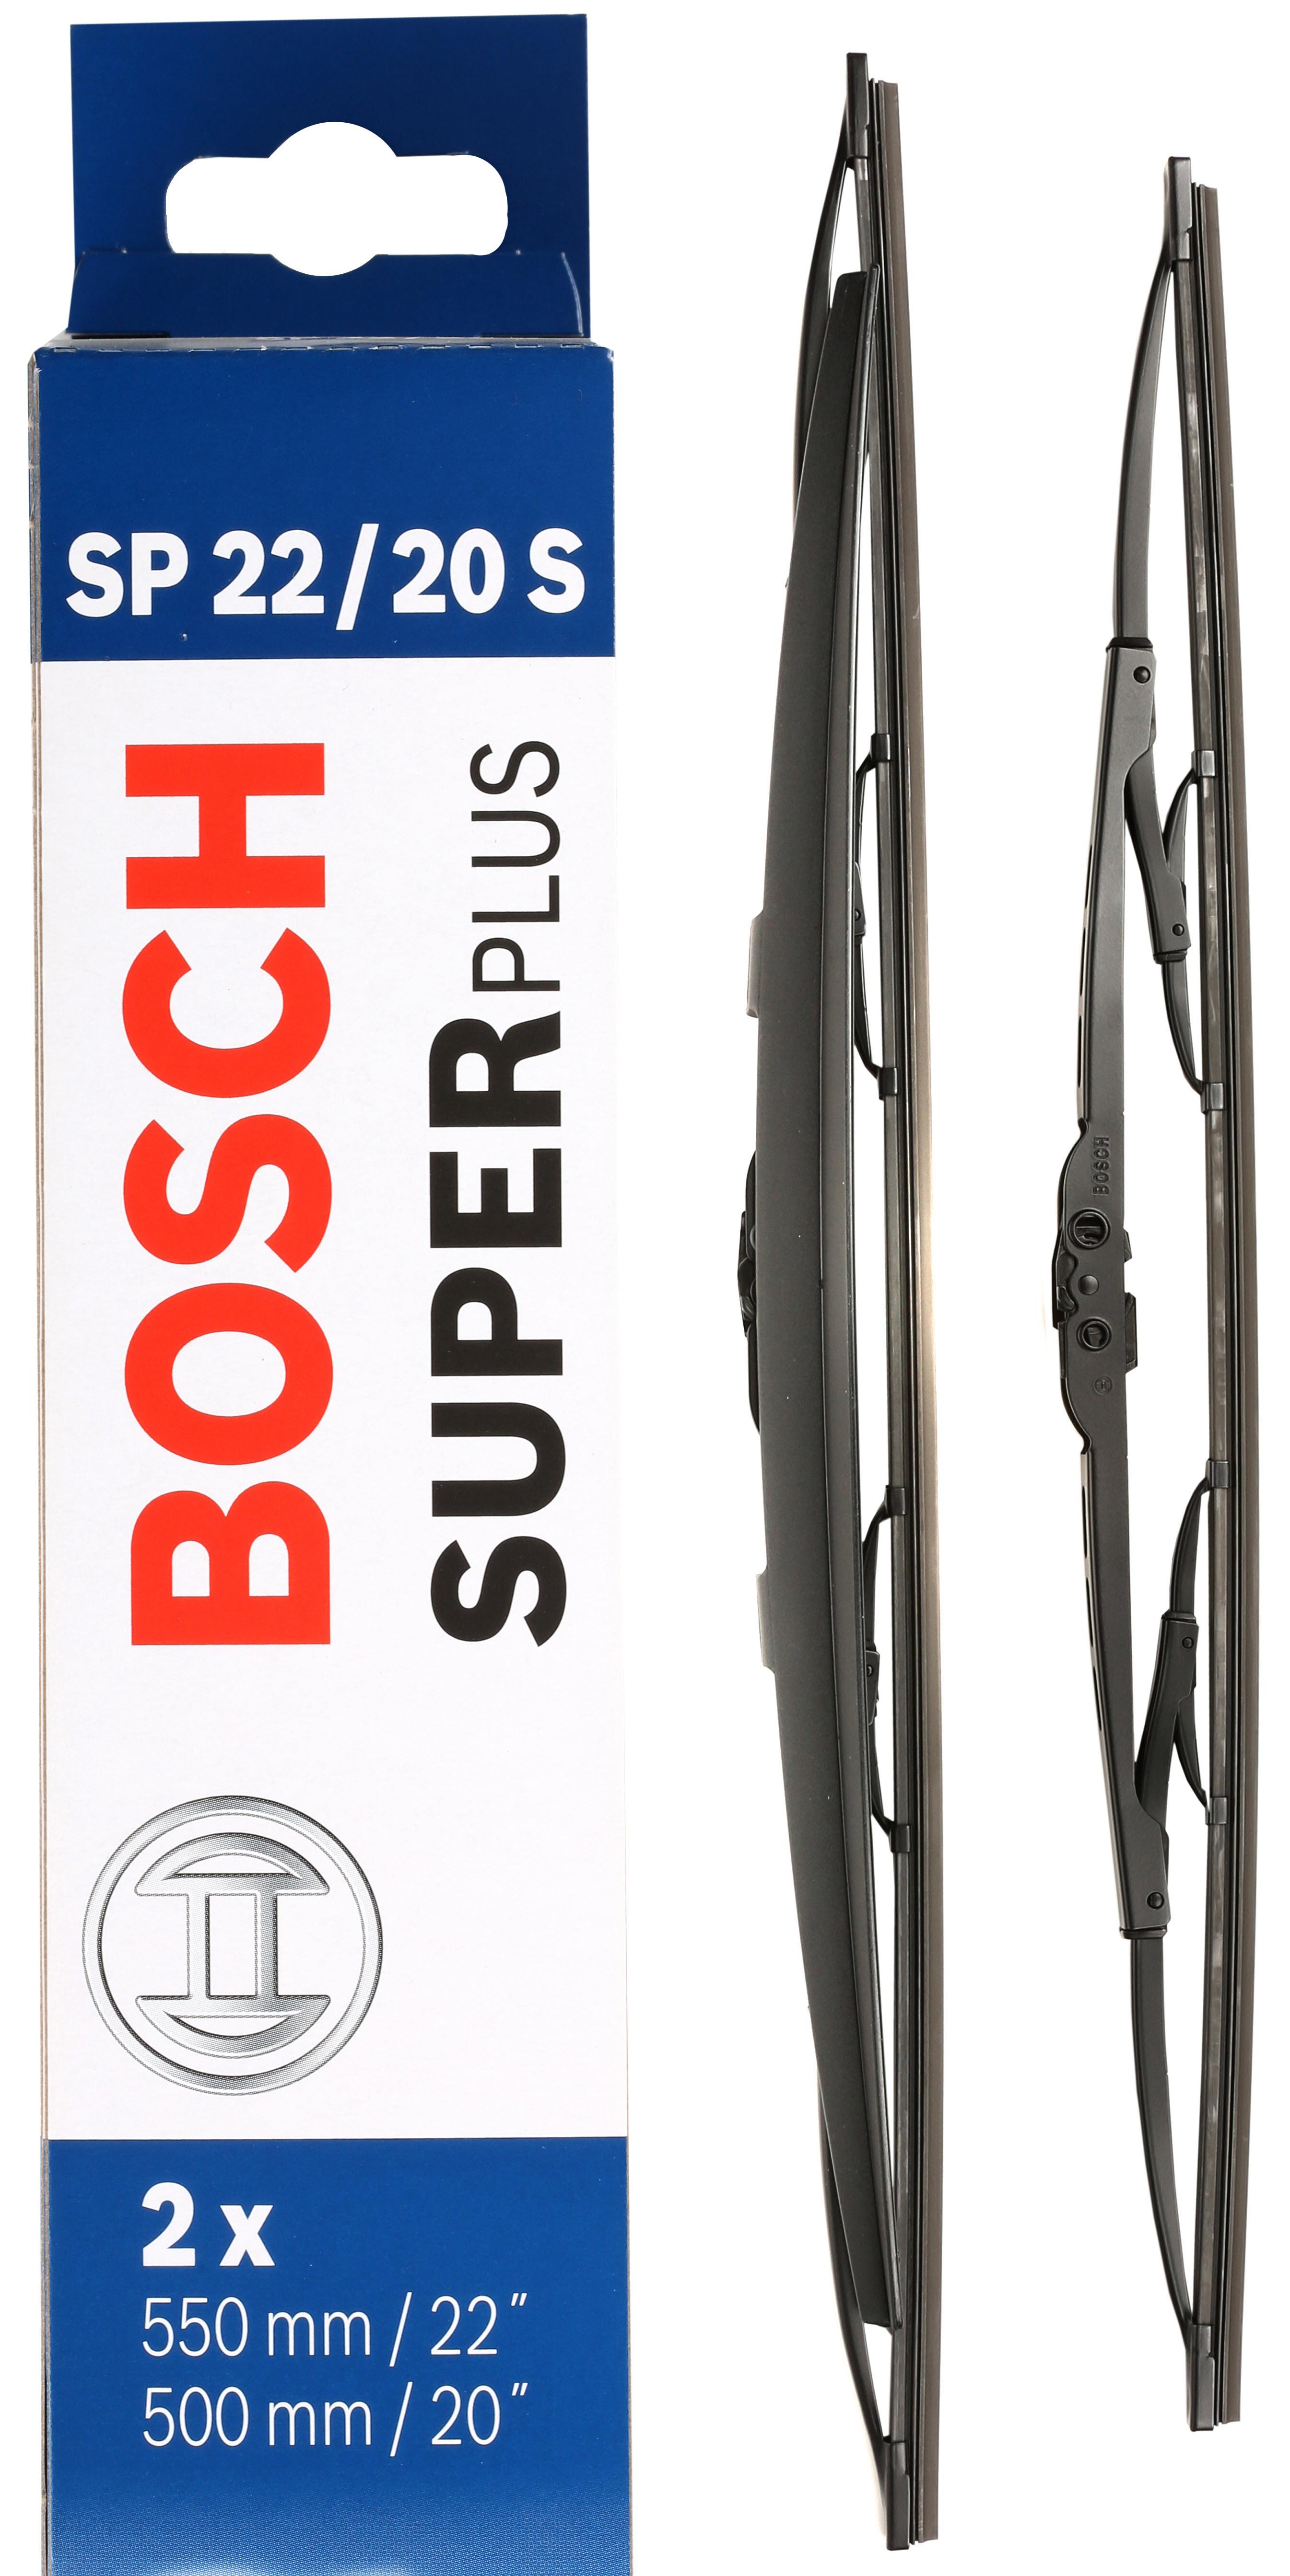 Bosch Sp22/20S Wiper Blades - Front Pair